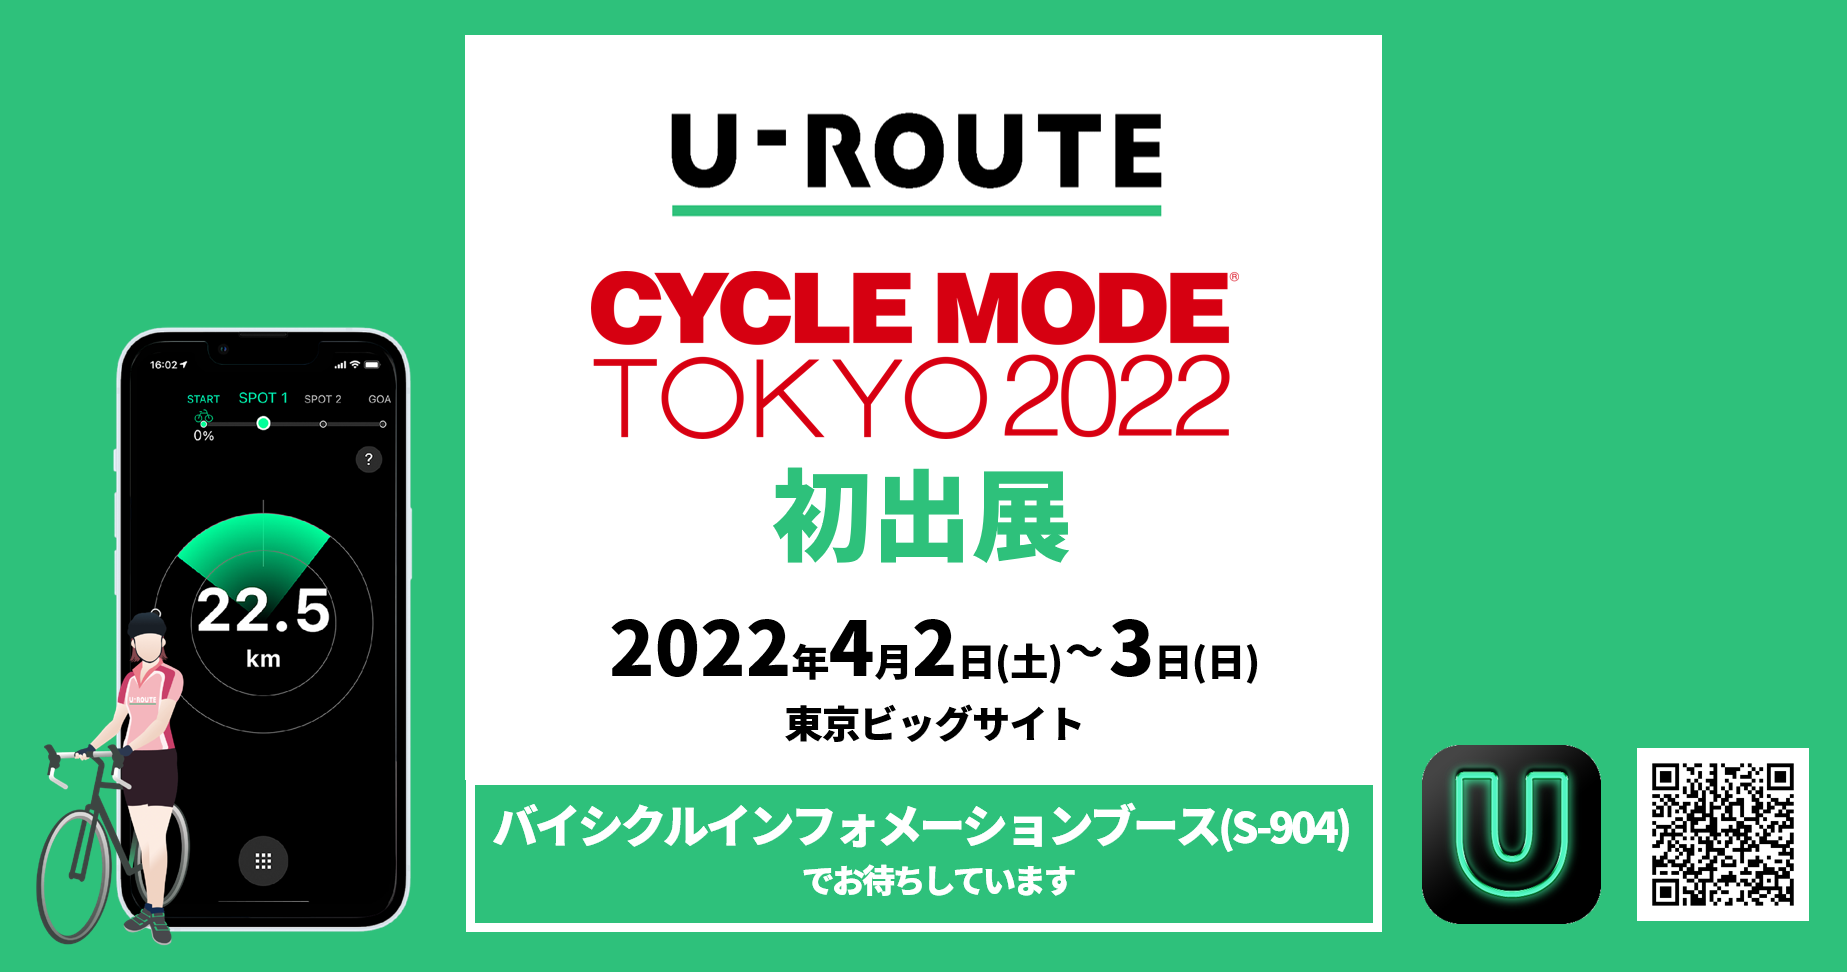 サイクルコンパスアプリ「U-ROUTE」、CYCLE MODE TOKYO 2022に初出展